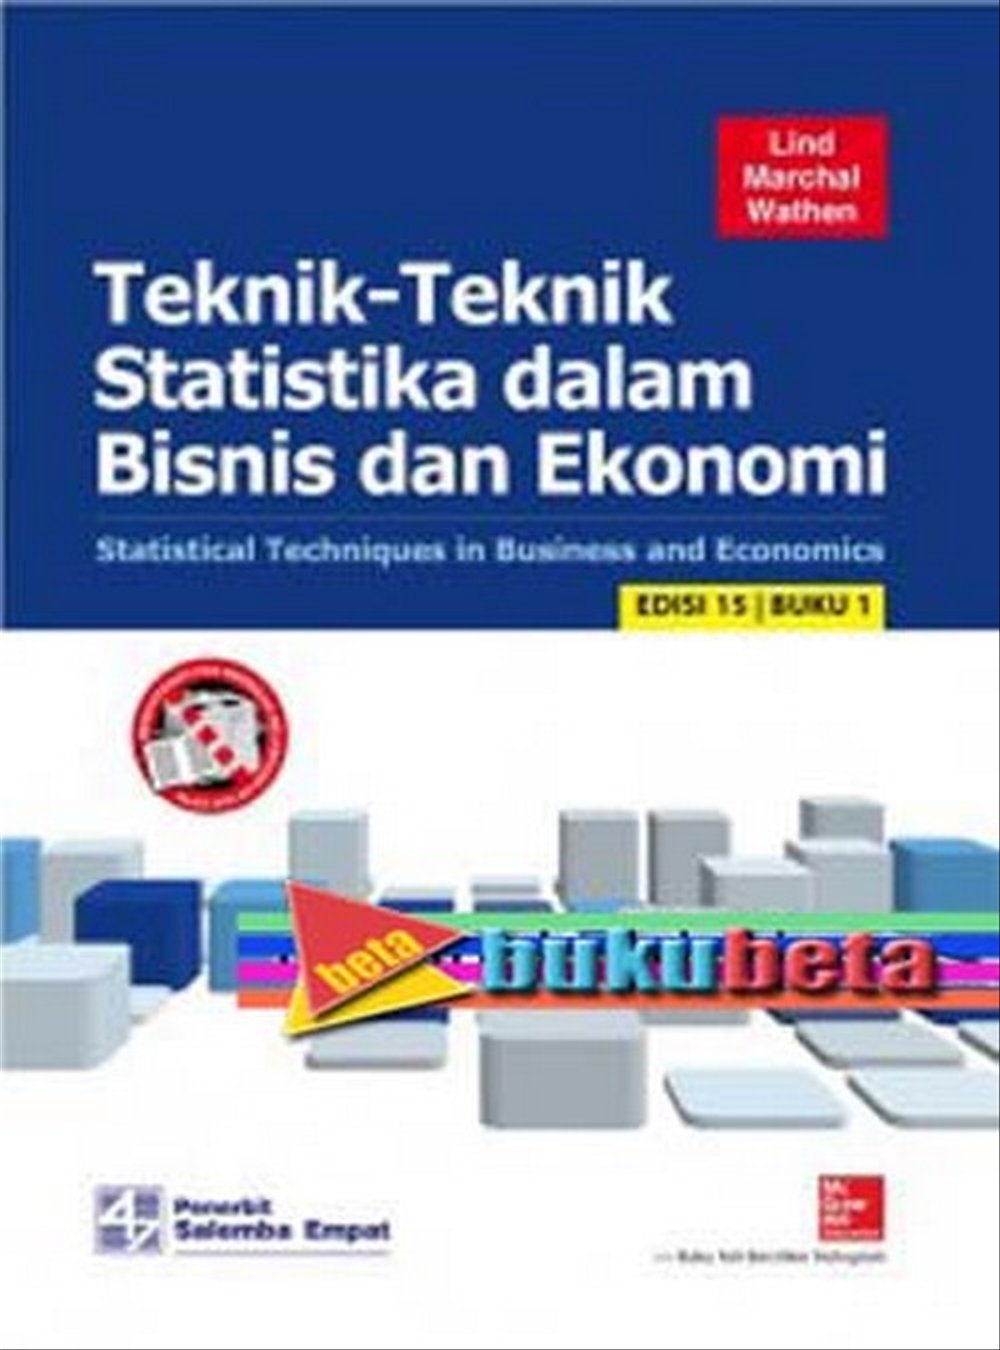 buku matematika ekonomi dan bisnis pdf download